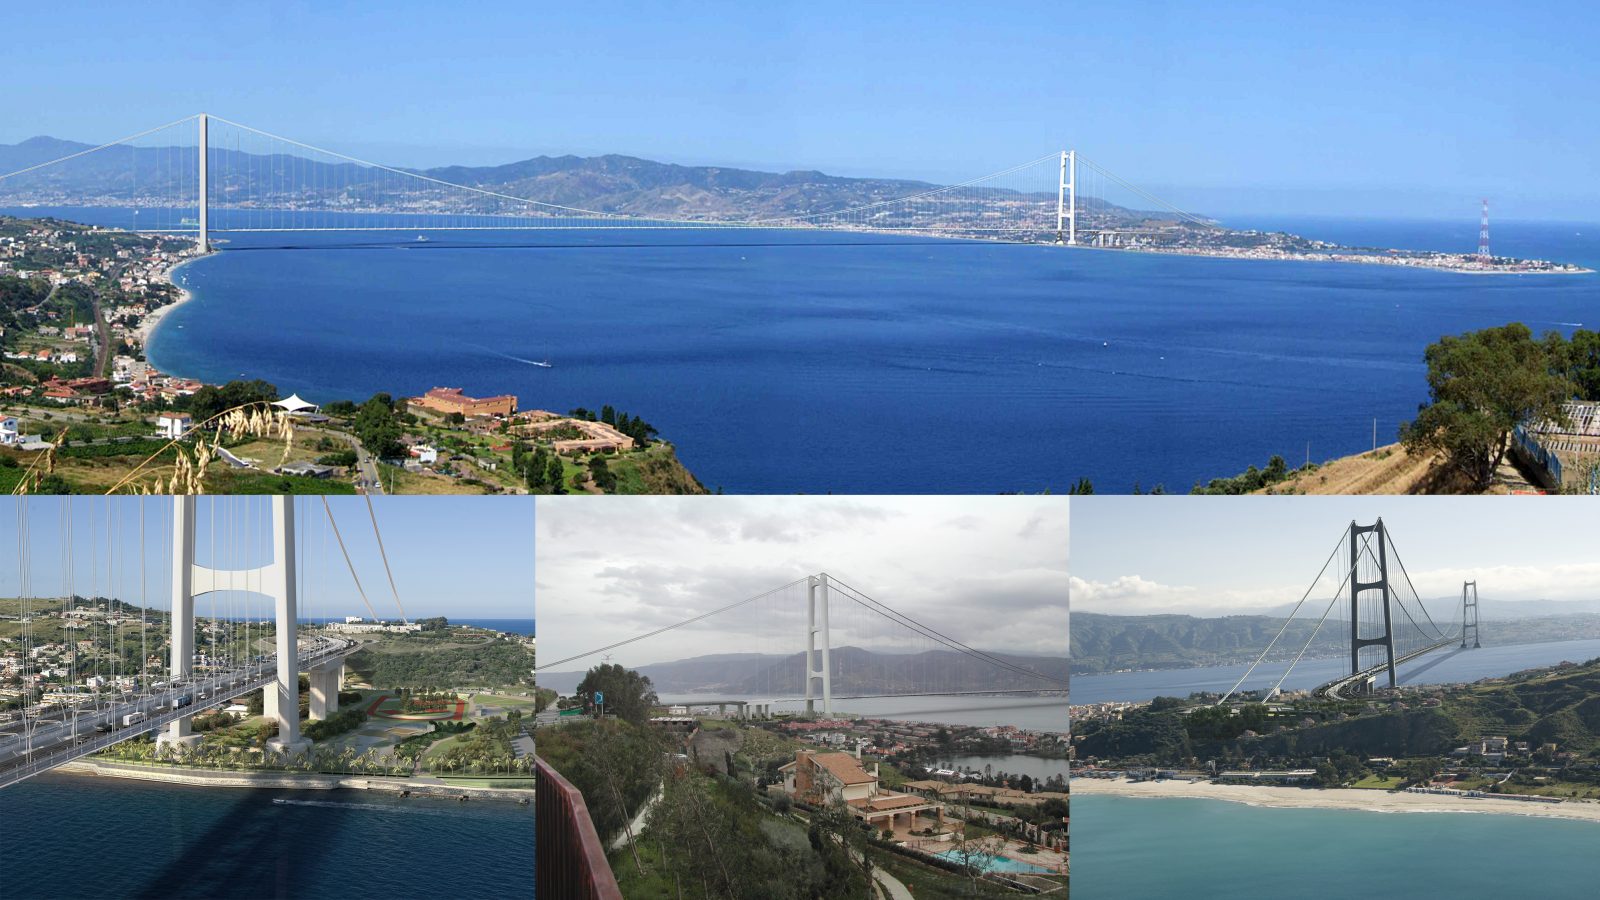 Ponte sullo Stretto di Messina – render del progetto definitivo Eurolink (Società Stretto di Messina)